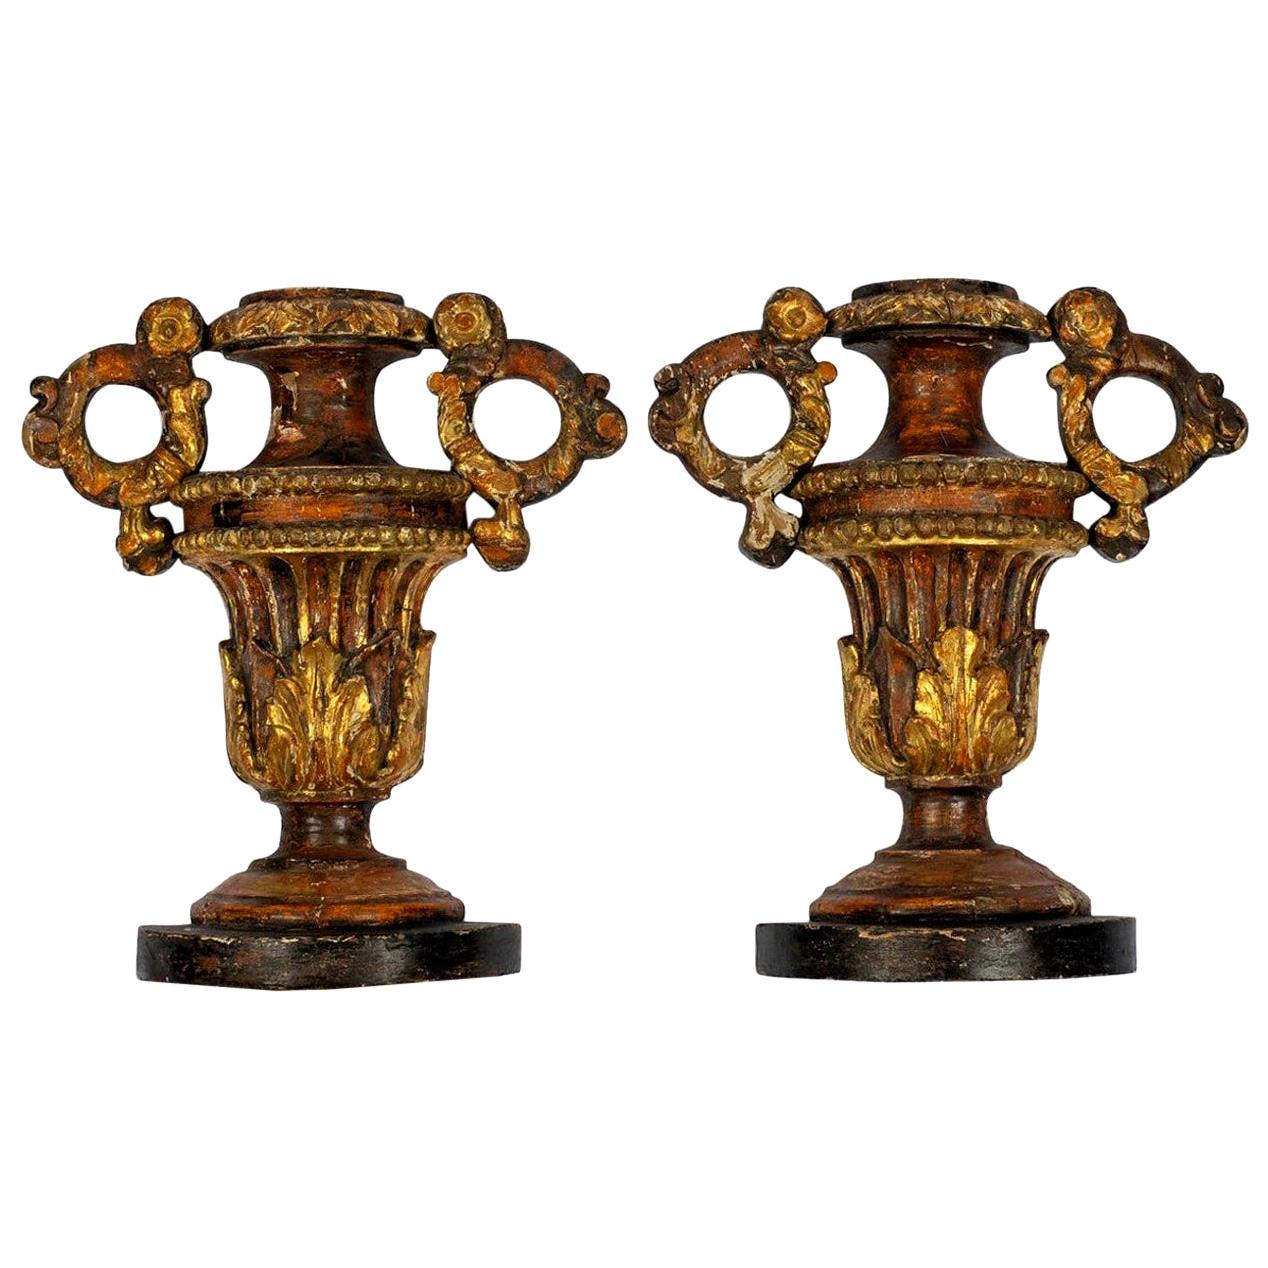 Paire d'ornements d'urne en bois doré italien du 18ème siècle